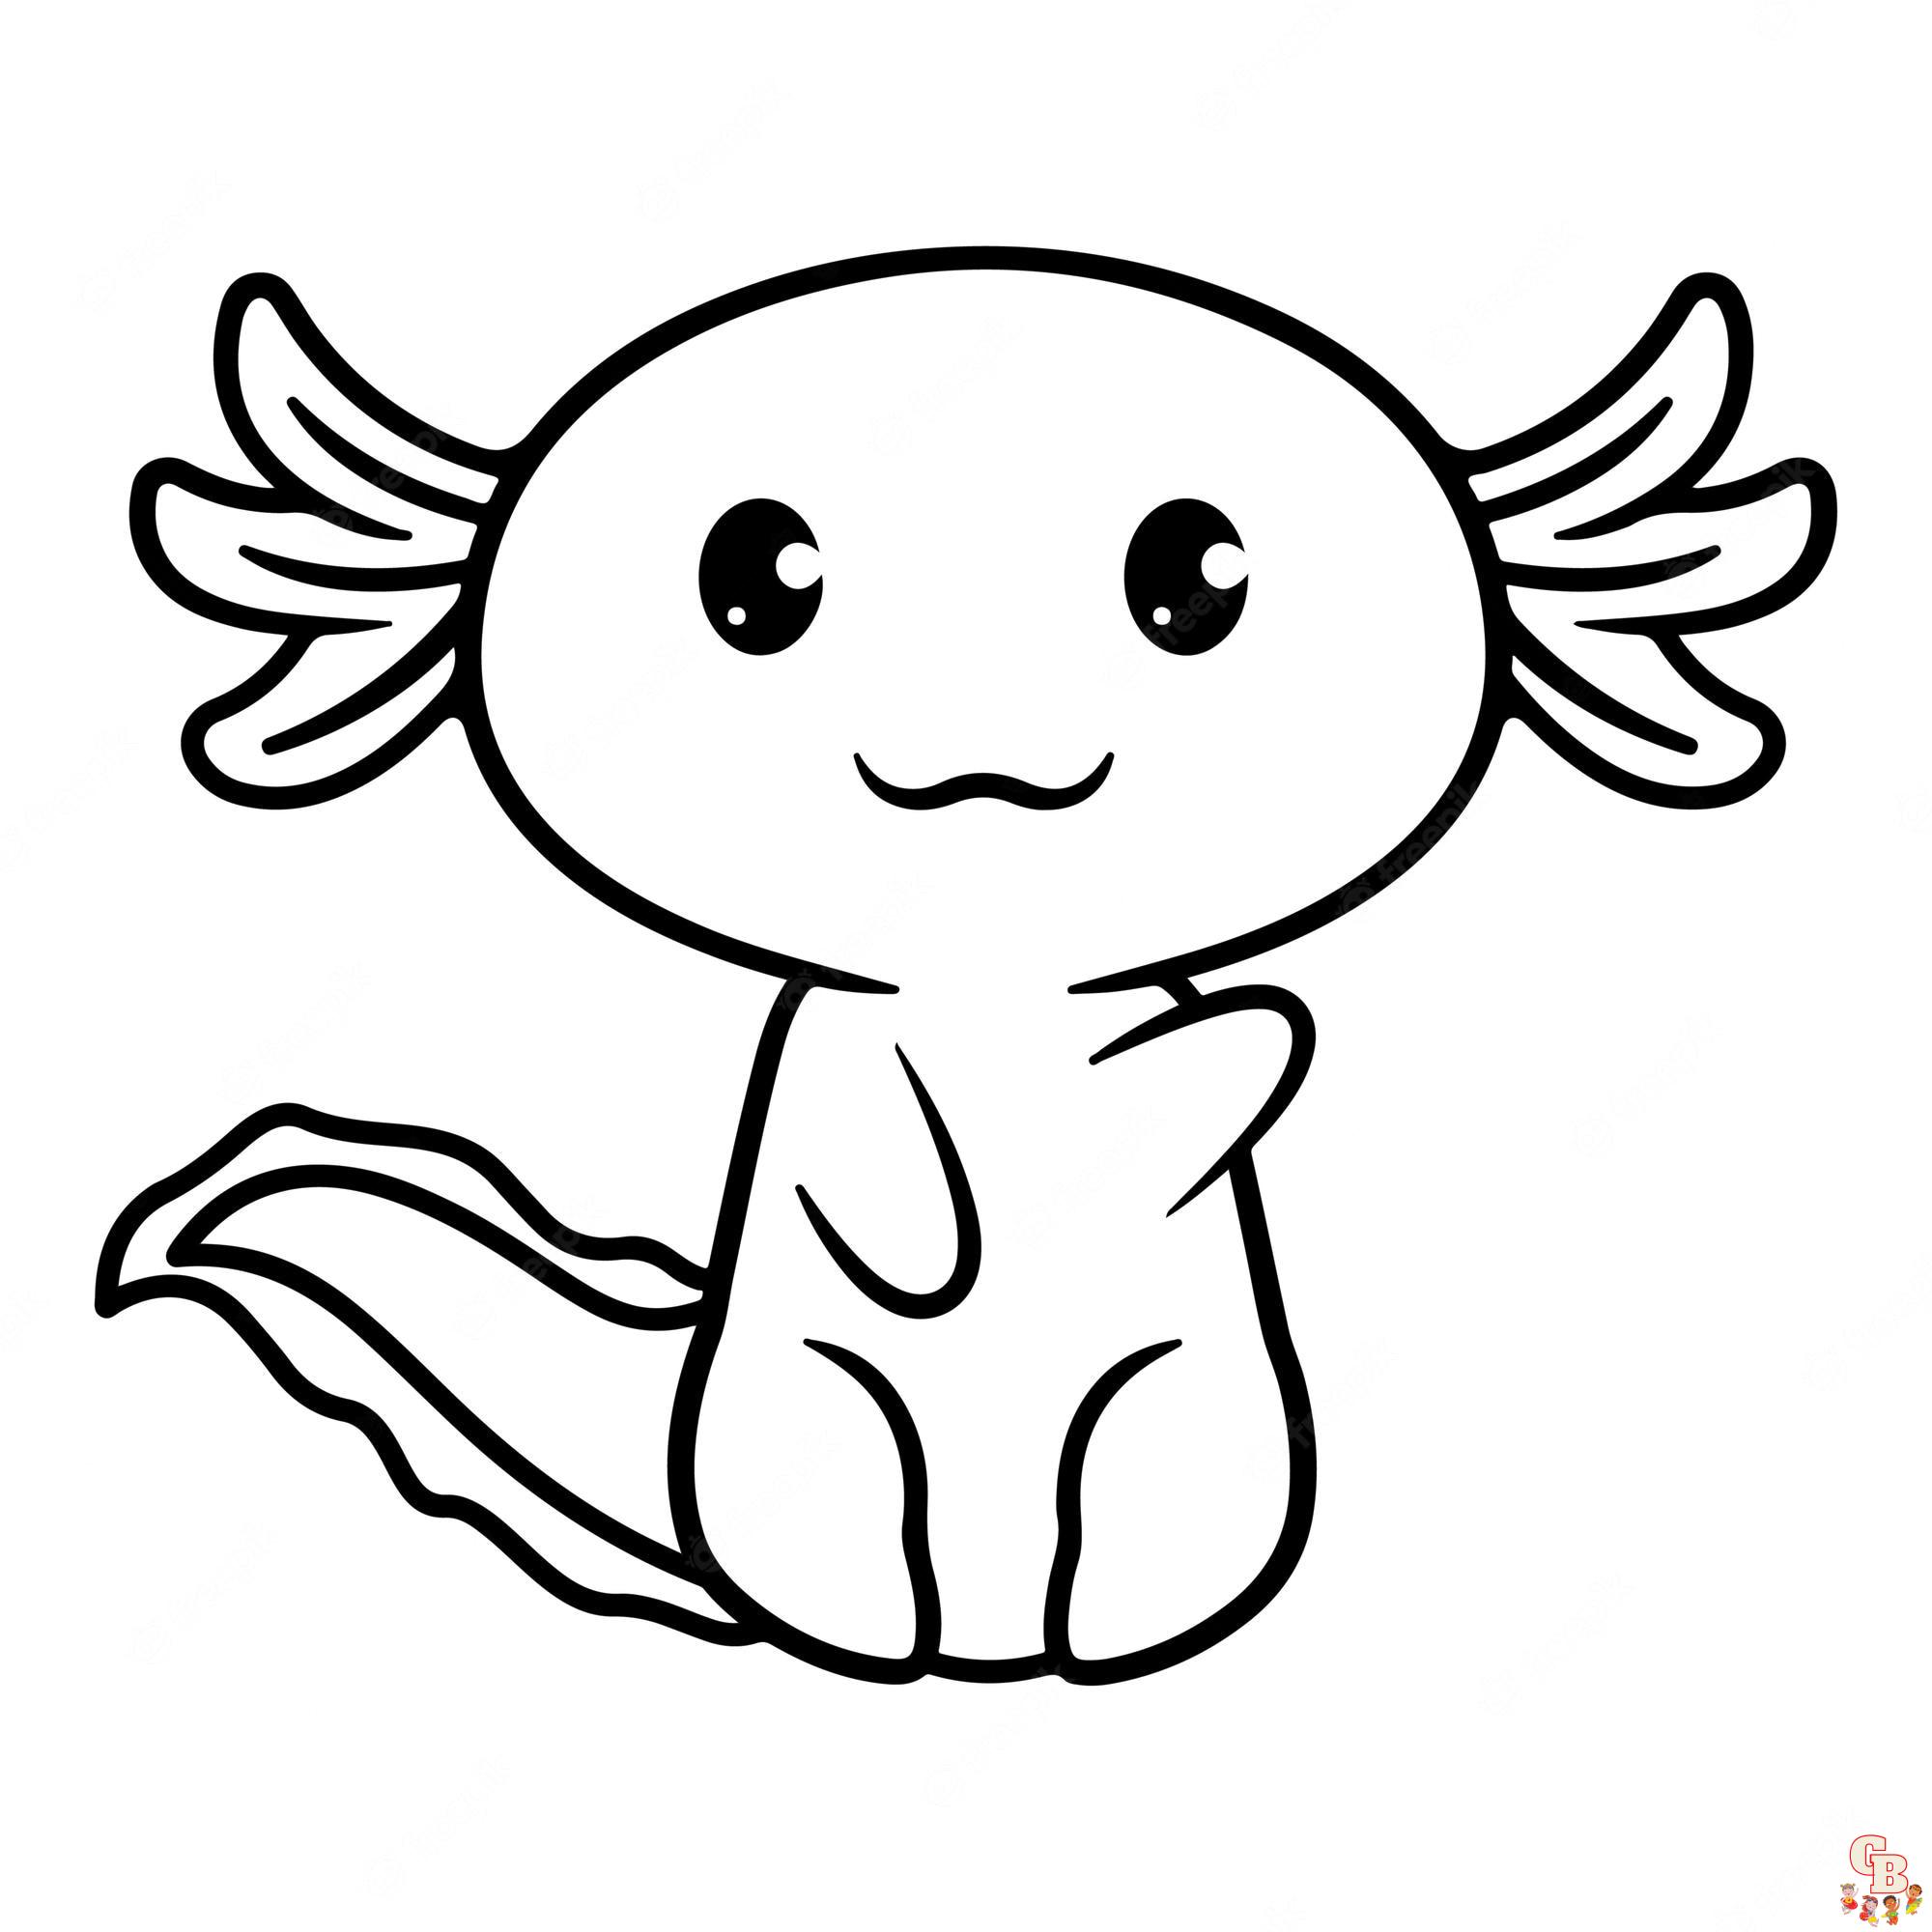 Malvorlagen Axolotl 1 1